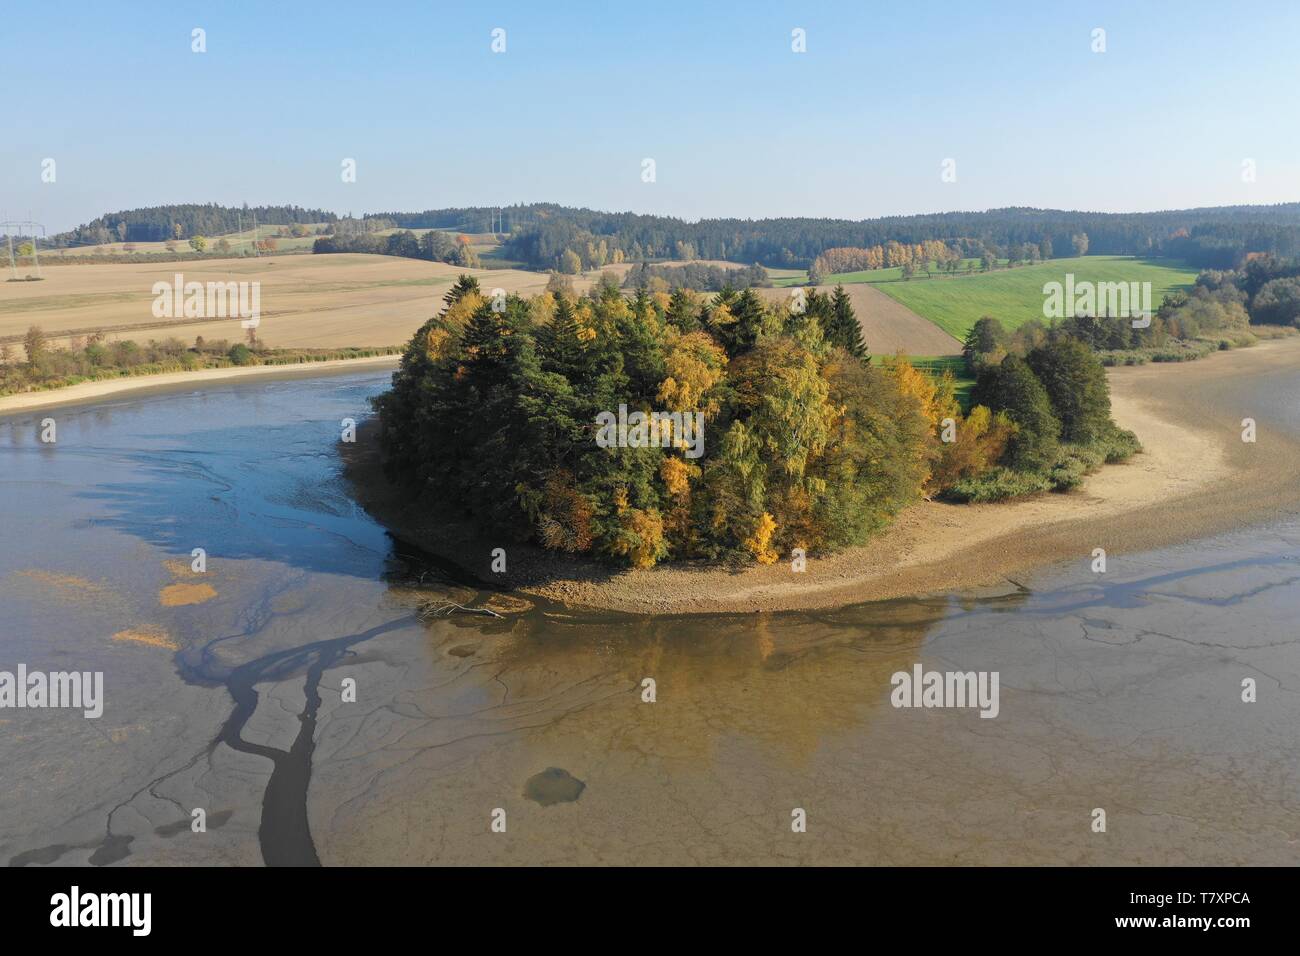 Luftbild von trockenen abgelassen Zucht Teich mit Schlamm. Karpfen, Barsch, Plötze und andere Fische Körper auf dem flachen Boden. Trockene Jahreszeit in Europa. Stockfoto